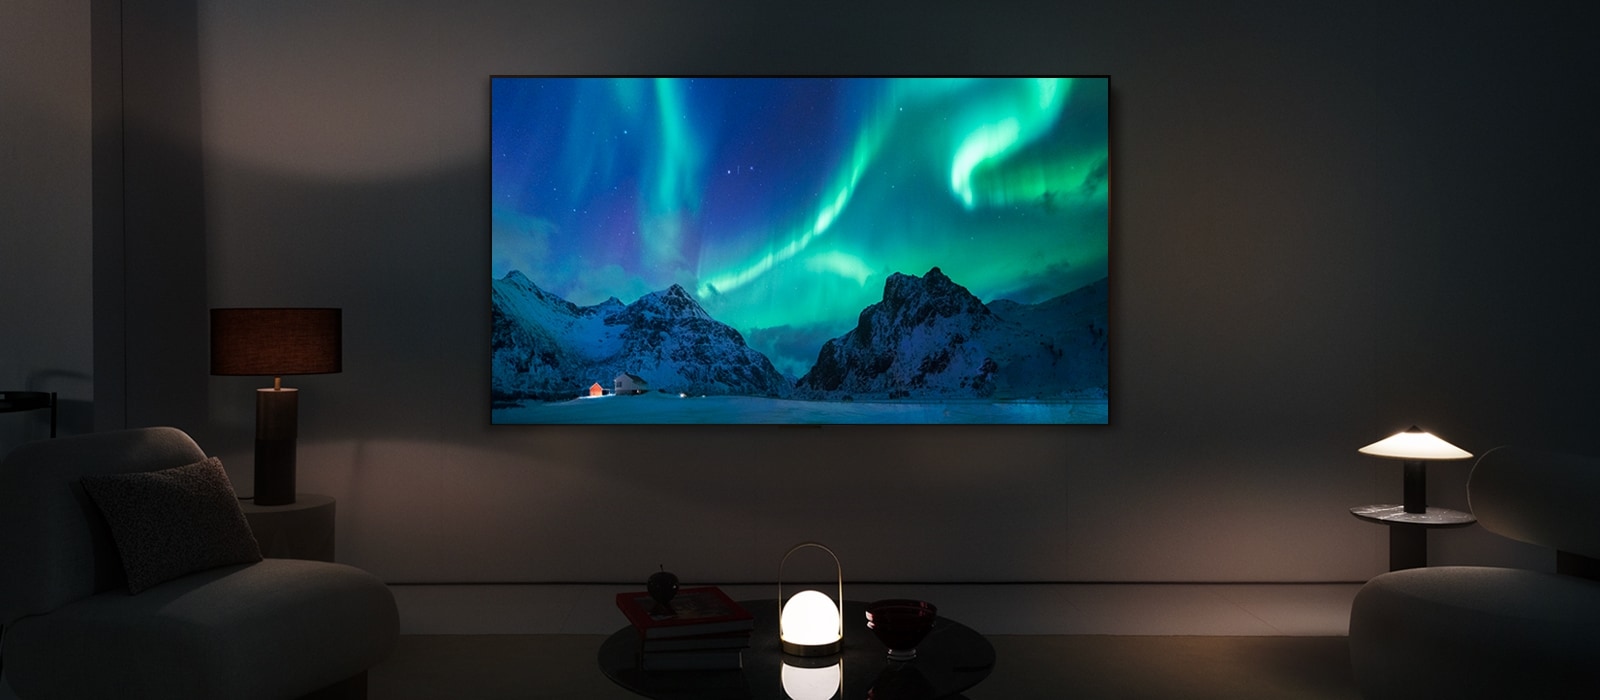 LG OLED TV v modernom obytnom priestore v noci.Na obrazovke sa zobrazuje polárna žiara s ideálnou úrovňou jasu.